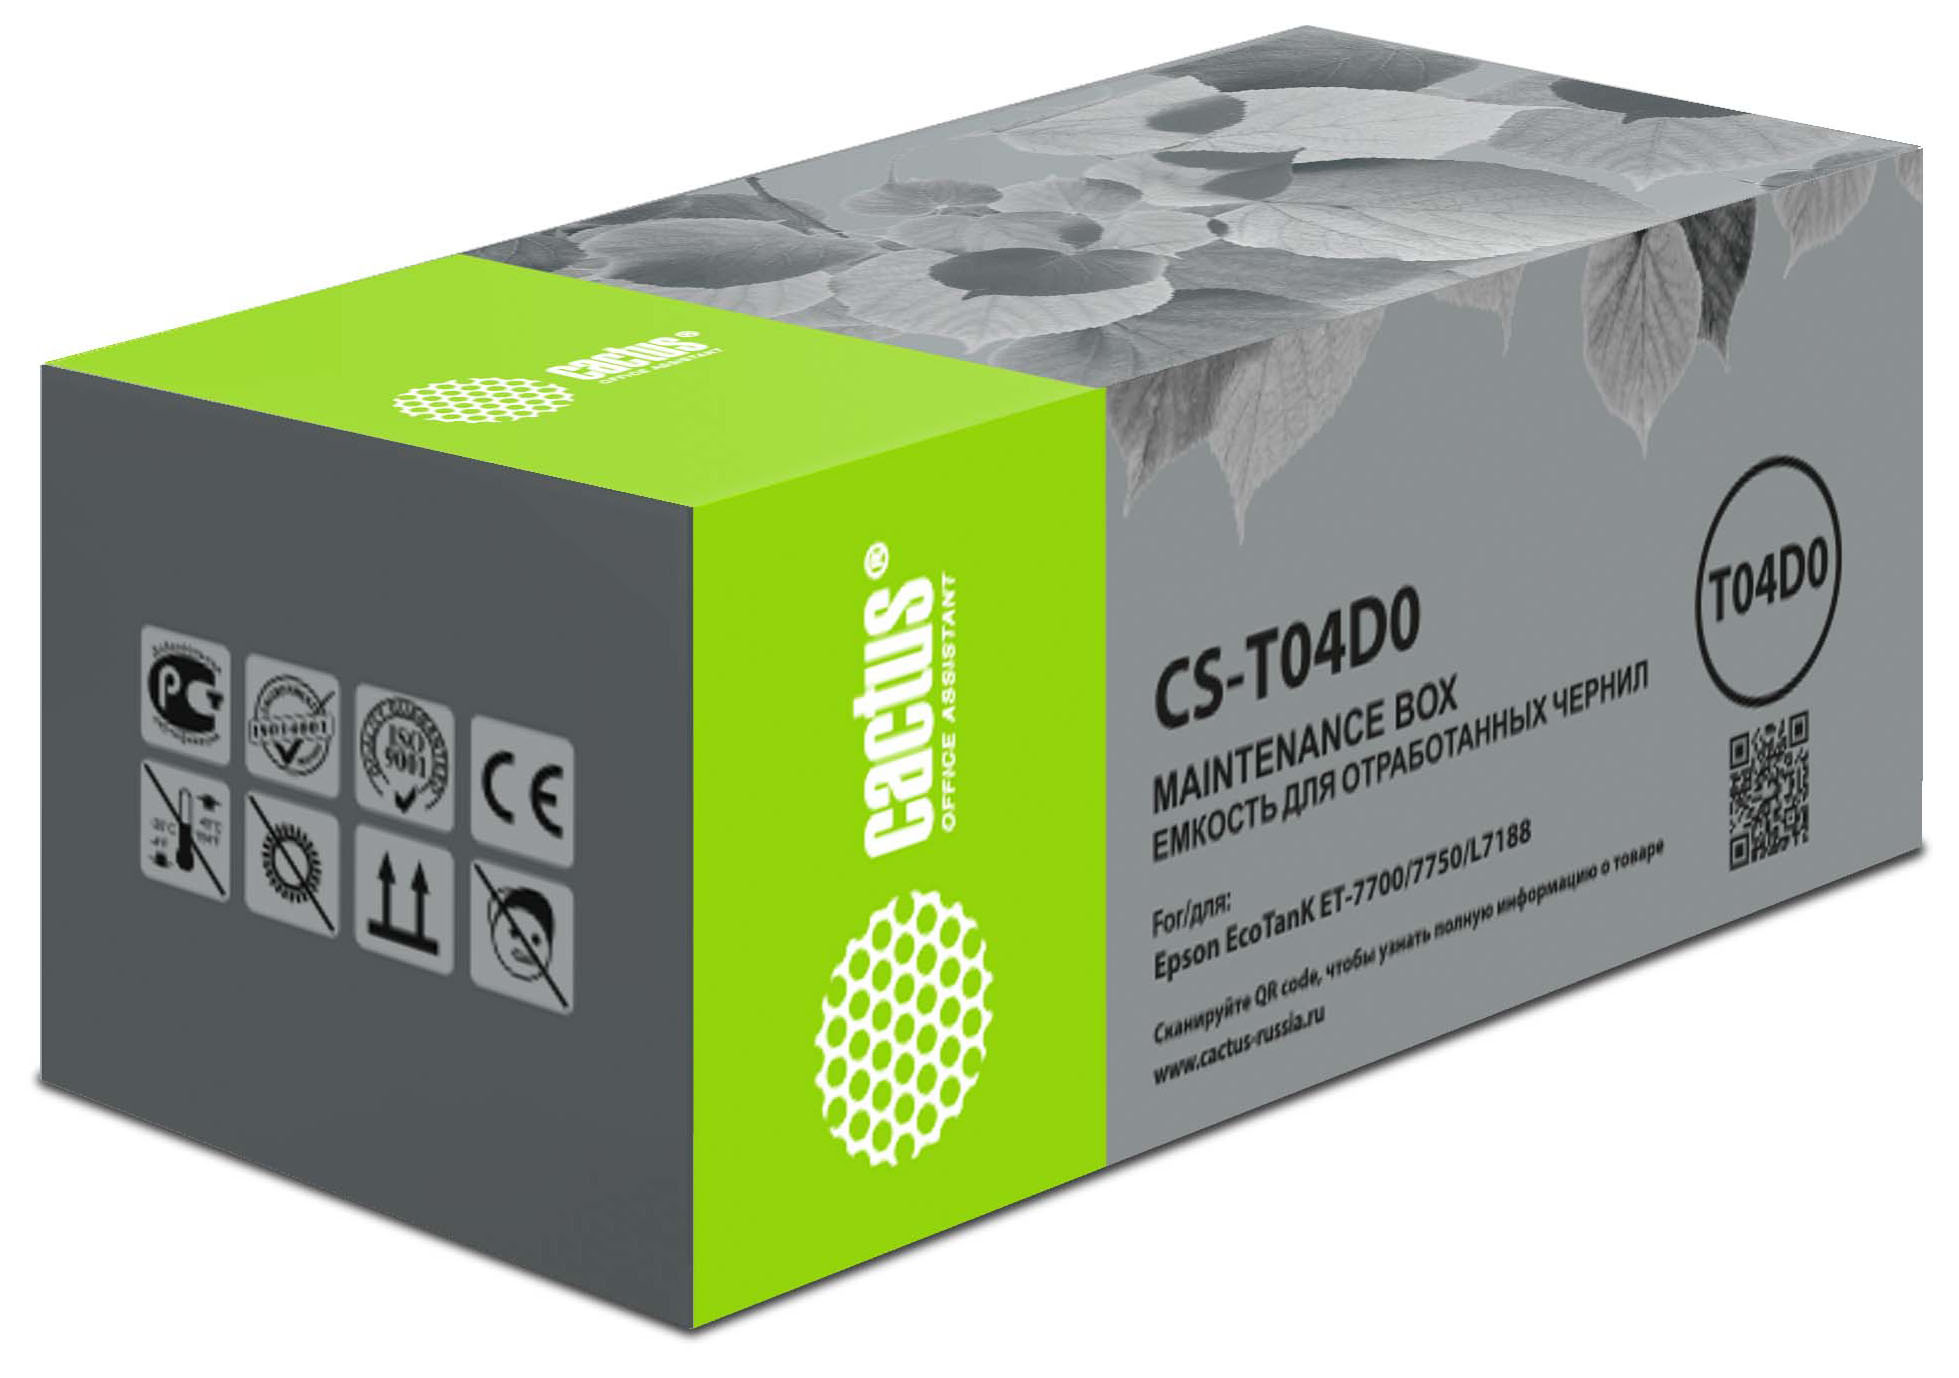 Бункер Cactus CS-T04D0 (T04D0 емкость для отработанных чернил) для Epson L7160/7180 